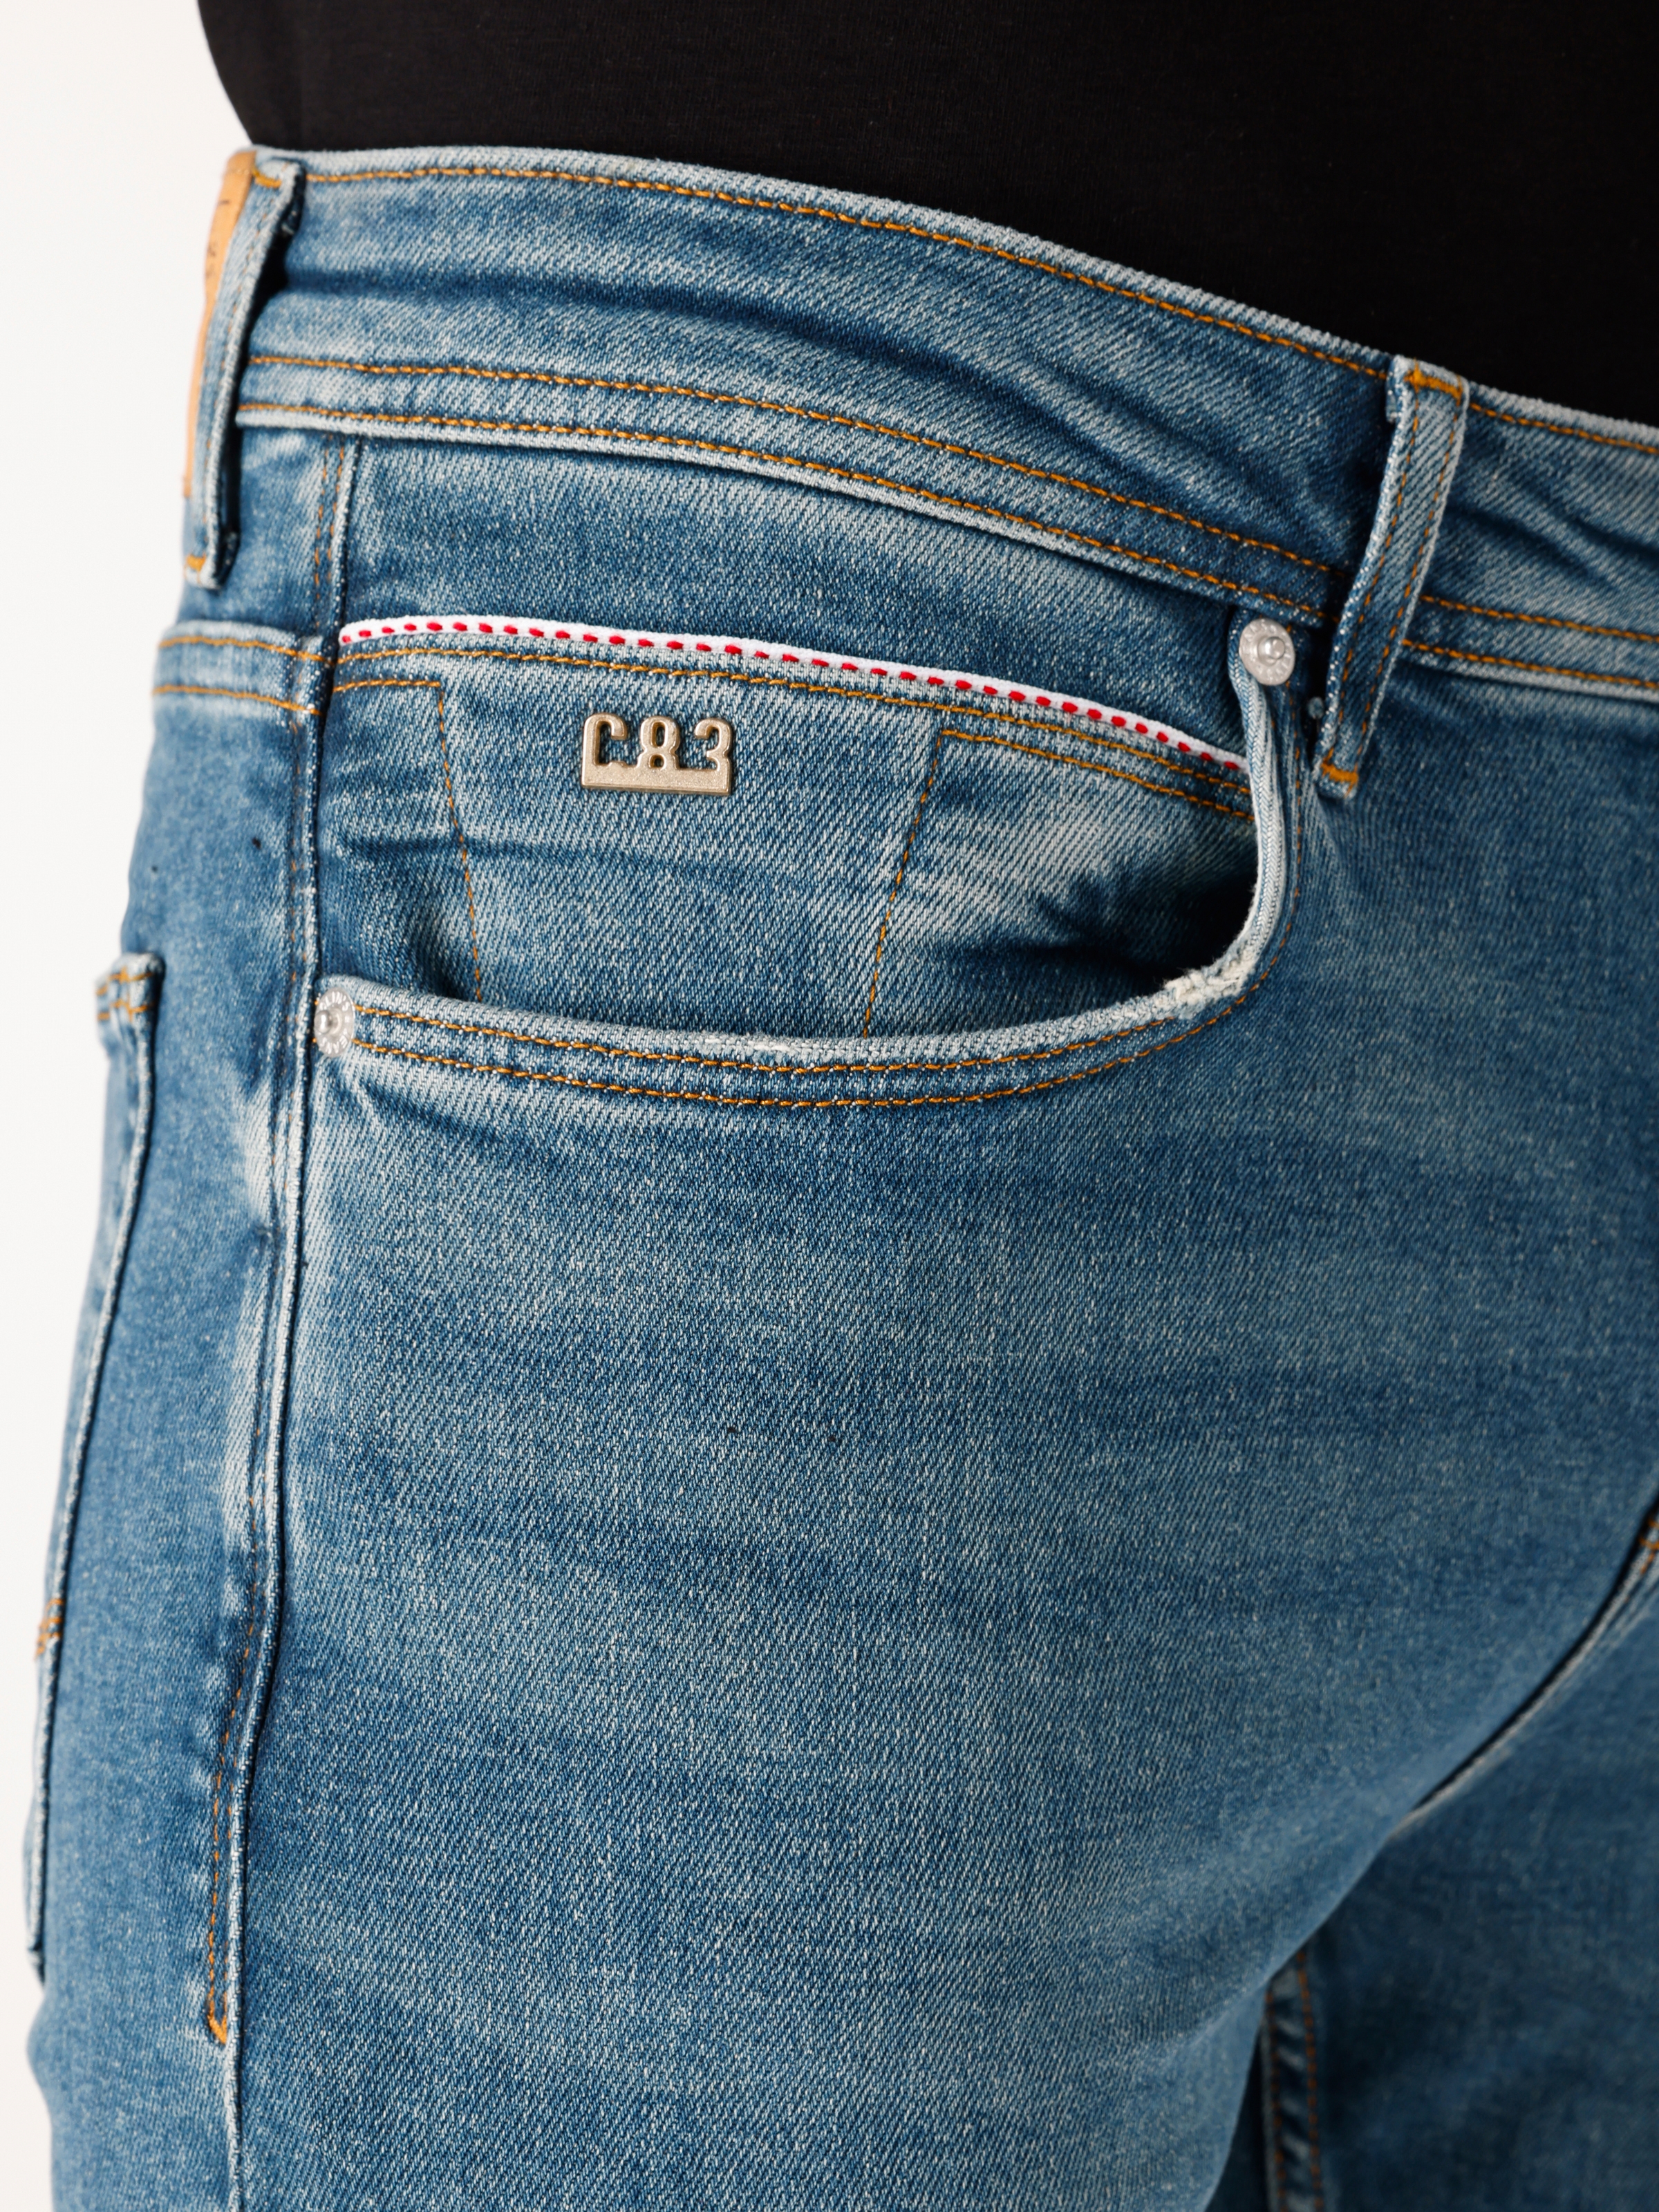 اعرض التفاصيل لـ 044 بنطال جينز كارل ذو قصة عادية بخصر منخفض وساق مستقيمة باللون الأزرق الداكن للرجال